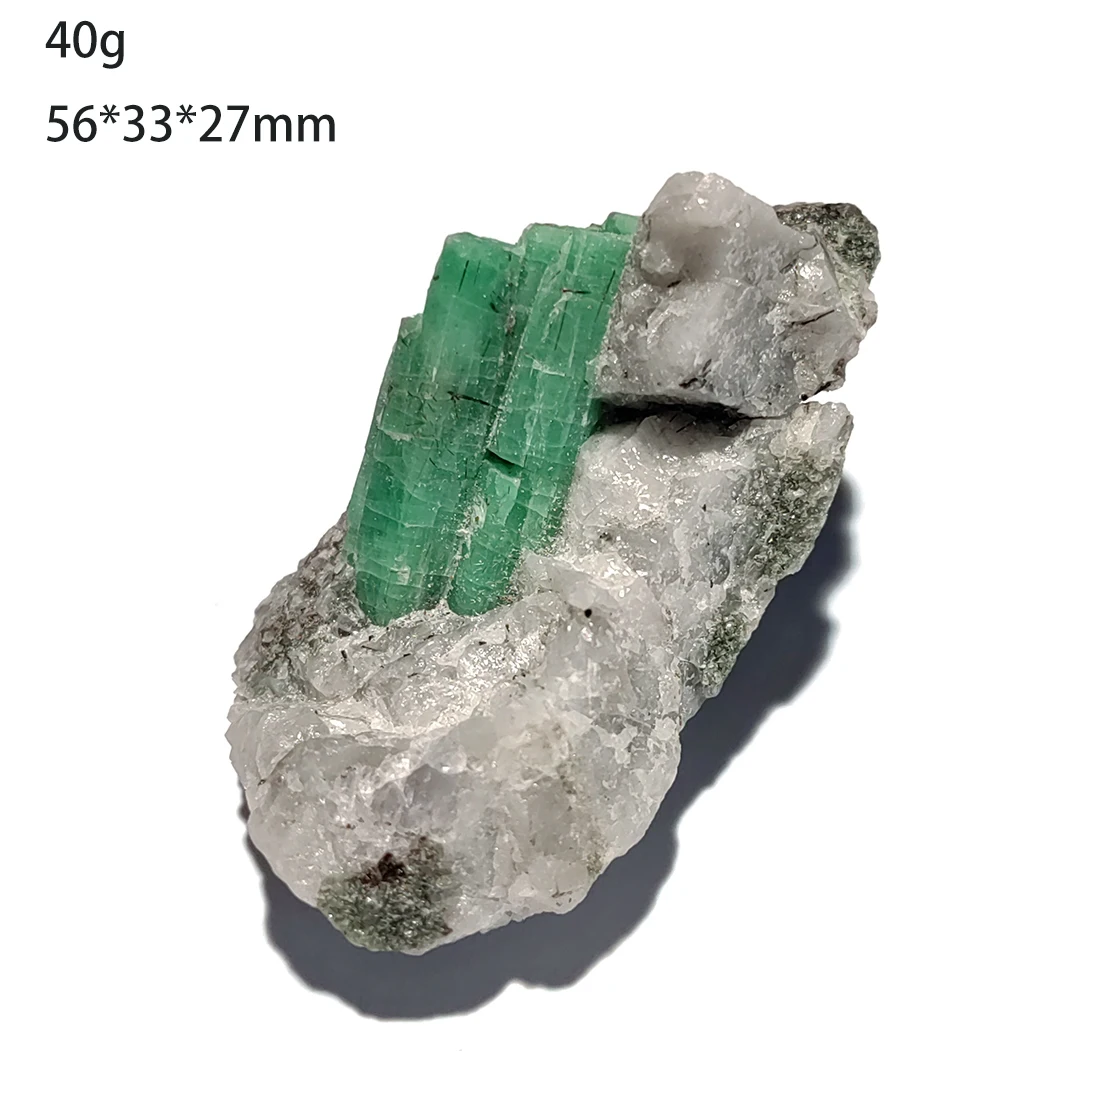 

C3-8B TOP 100% натуральный кварцевый Изумрудный минеральный кристалл, образец, украшение для дома из Malipo Wenshan Yunnan Province China